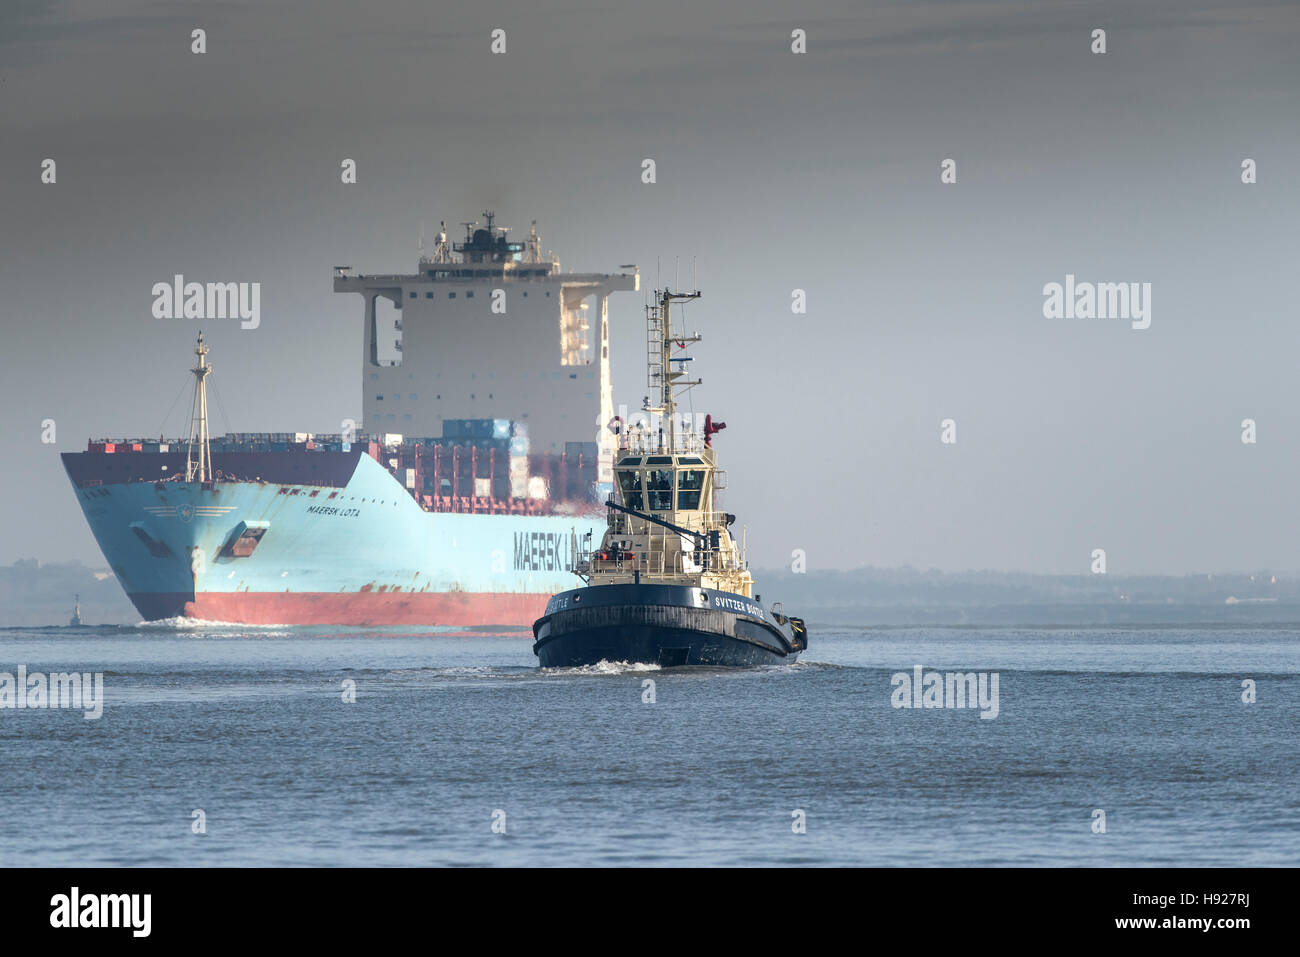 Der Schlepper Switzer Bootle begleitet das Containerschiff Maersk Lota, wie sie flussaufwärts auf der Themse dampft. Stockfoto